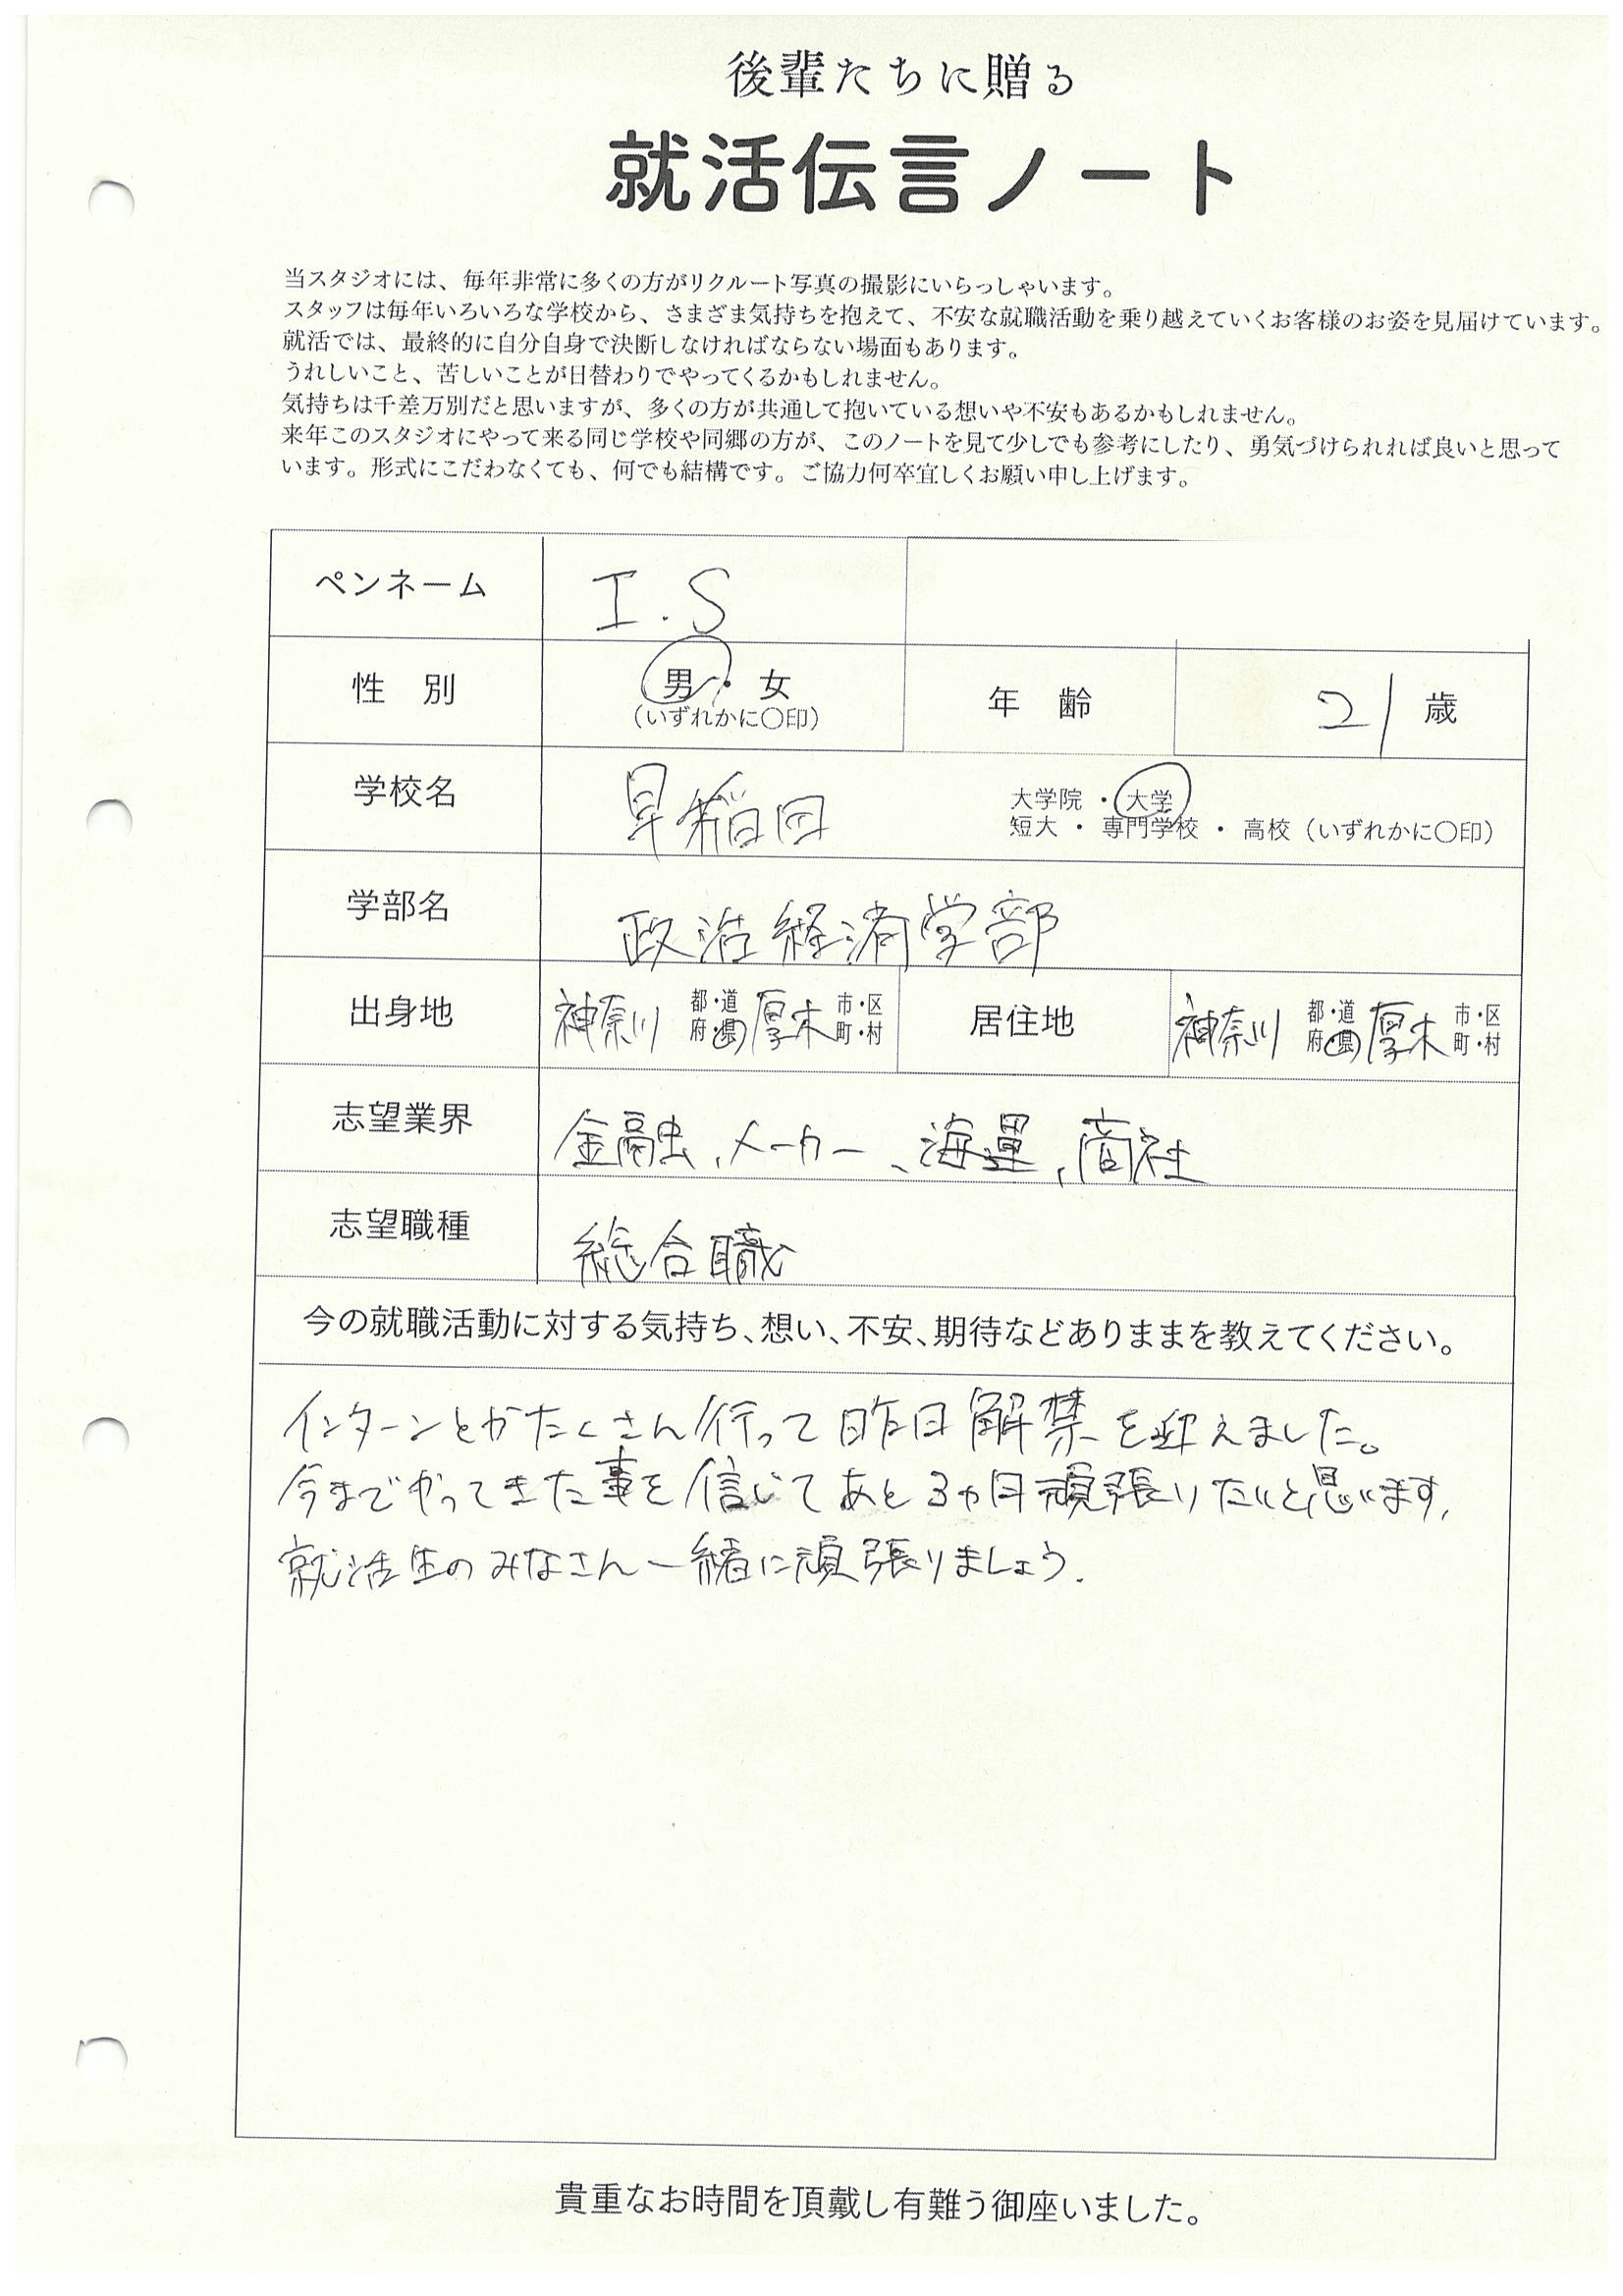 早稲田大学 政治経済学部 I.Sさんの直筆メッセージ リクルートフォトスタジオで就活証明写真を撮影